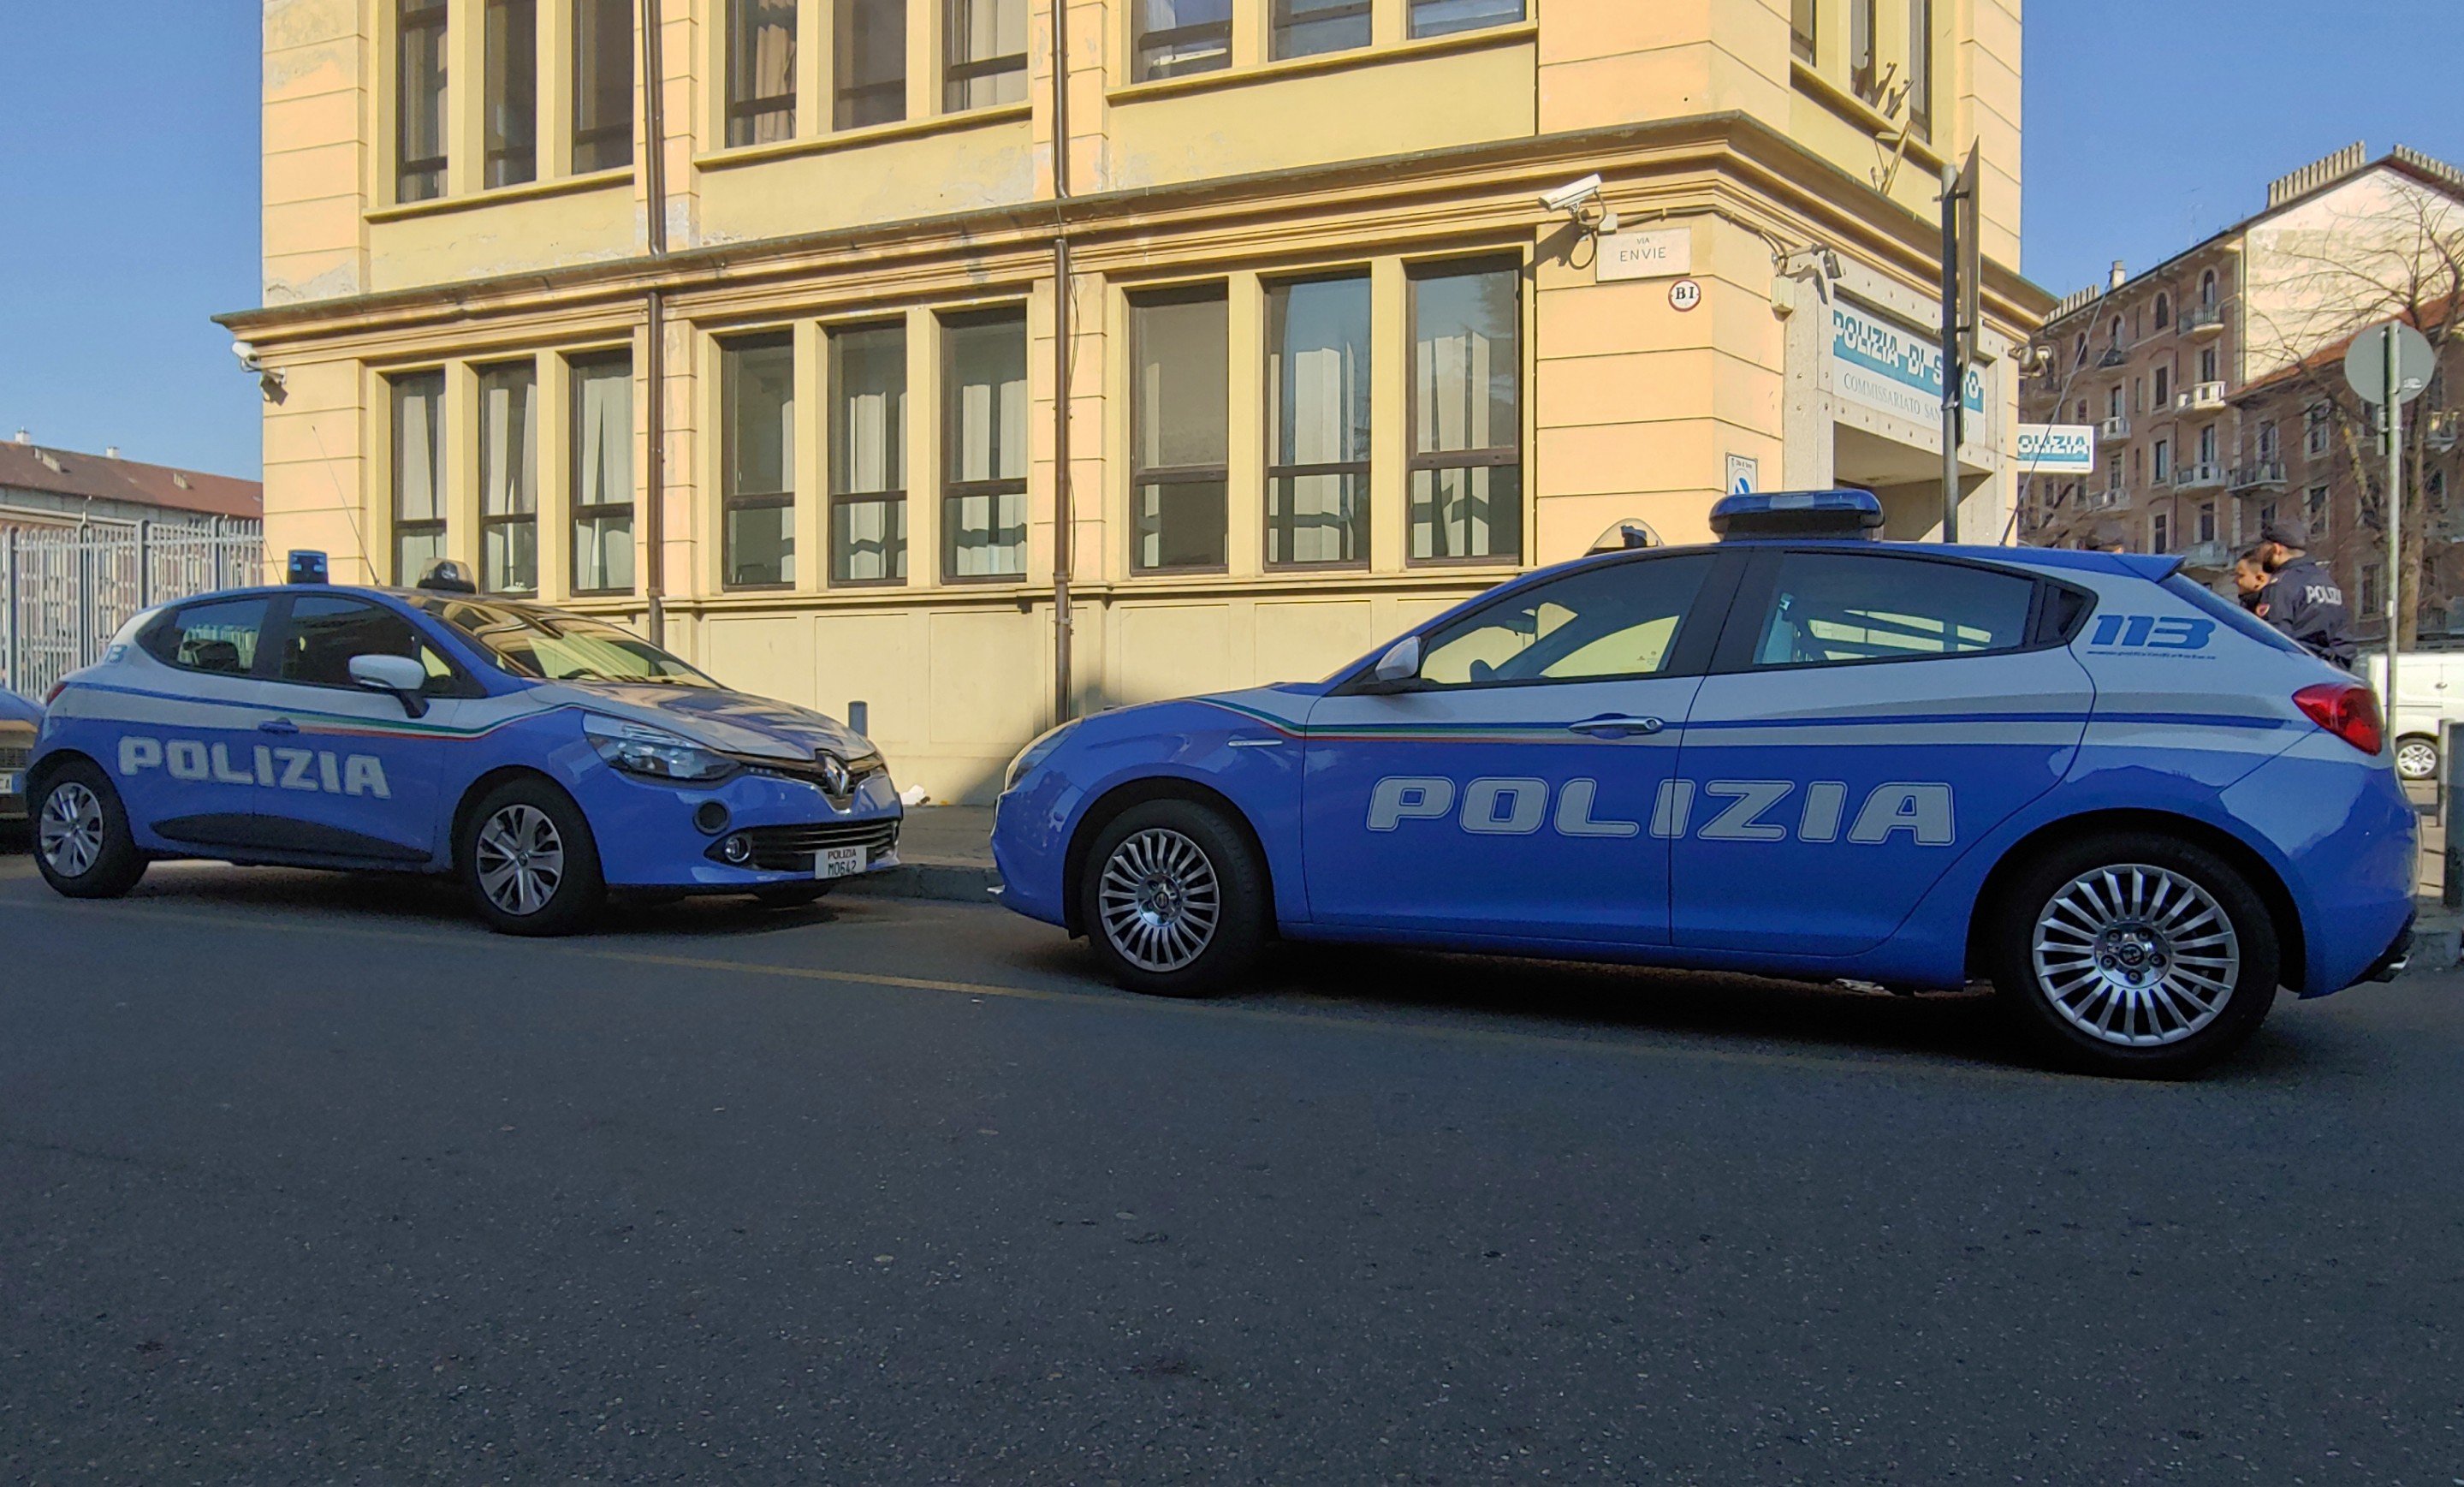 Torino: Iniziativa della Polizia di Stato contro le truffe agli anziani